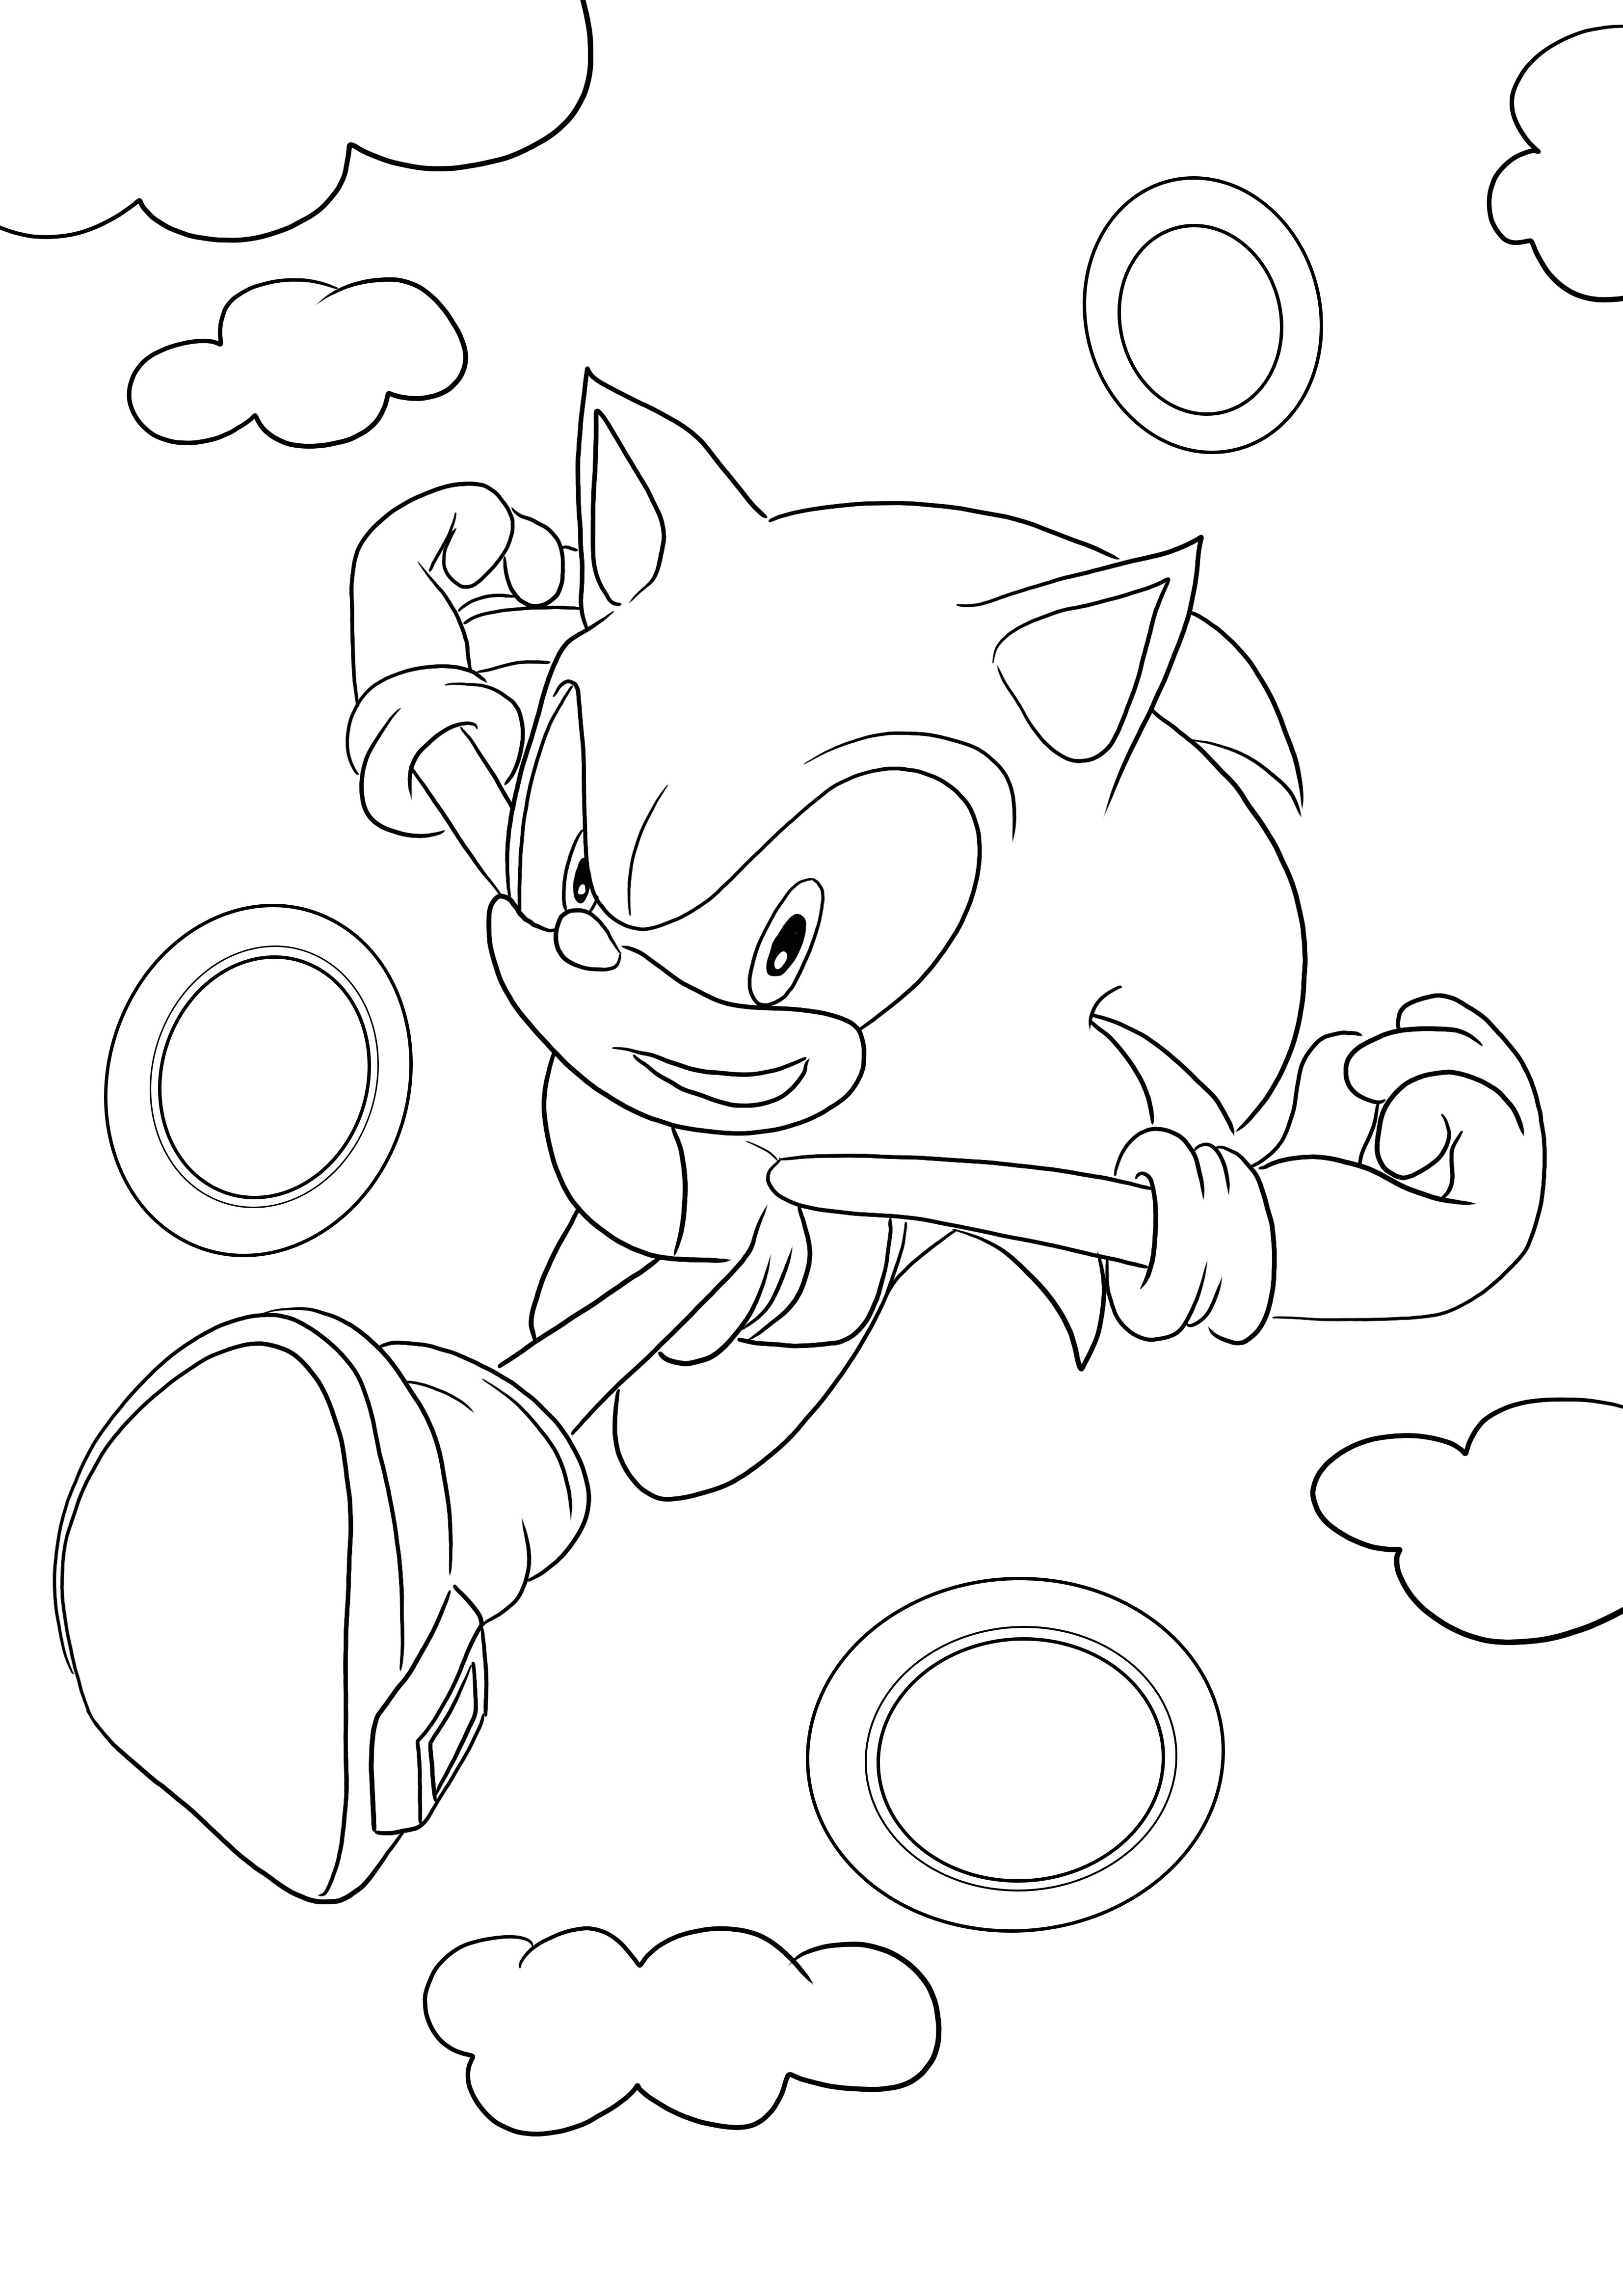 Download e coloração grátis do Sonic correndo pelos anéis